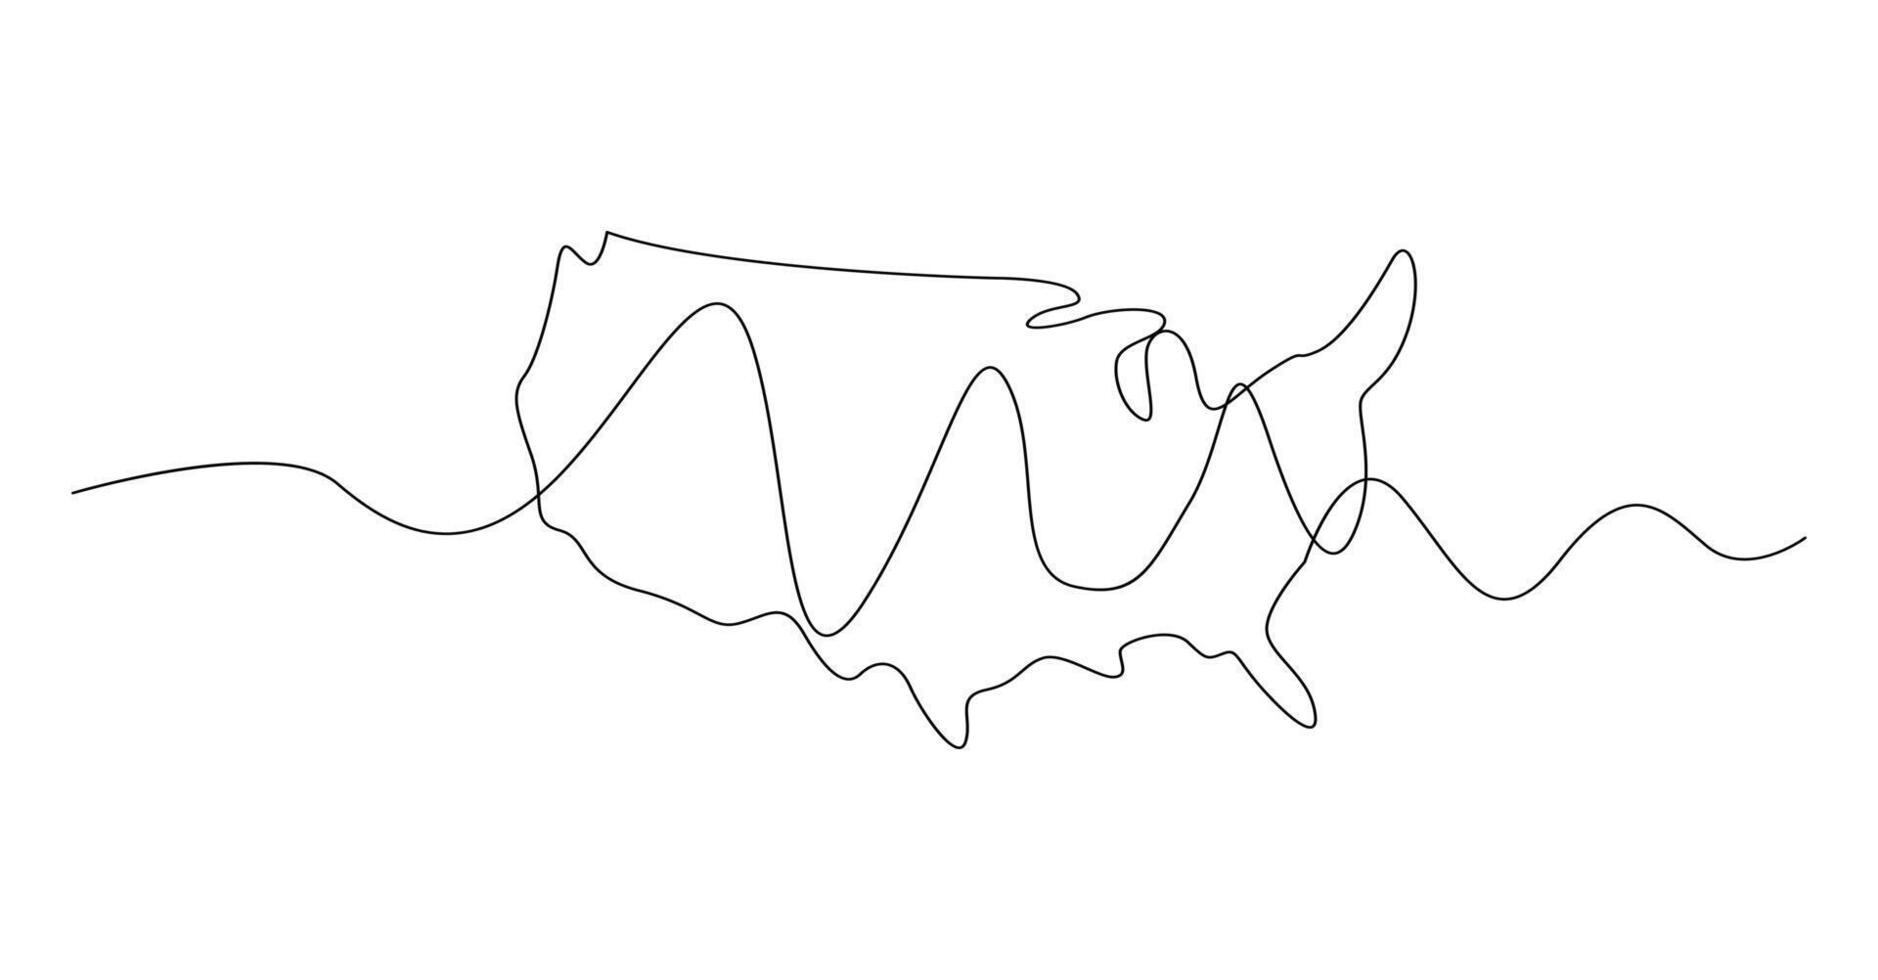 Stati Uniti d'America carta geografica uno continuo linea disegno. nazione singolo linea contorno carta geografica, forma di nazione. vettore